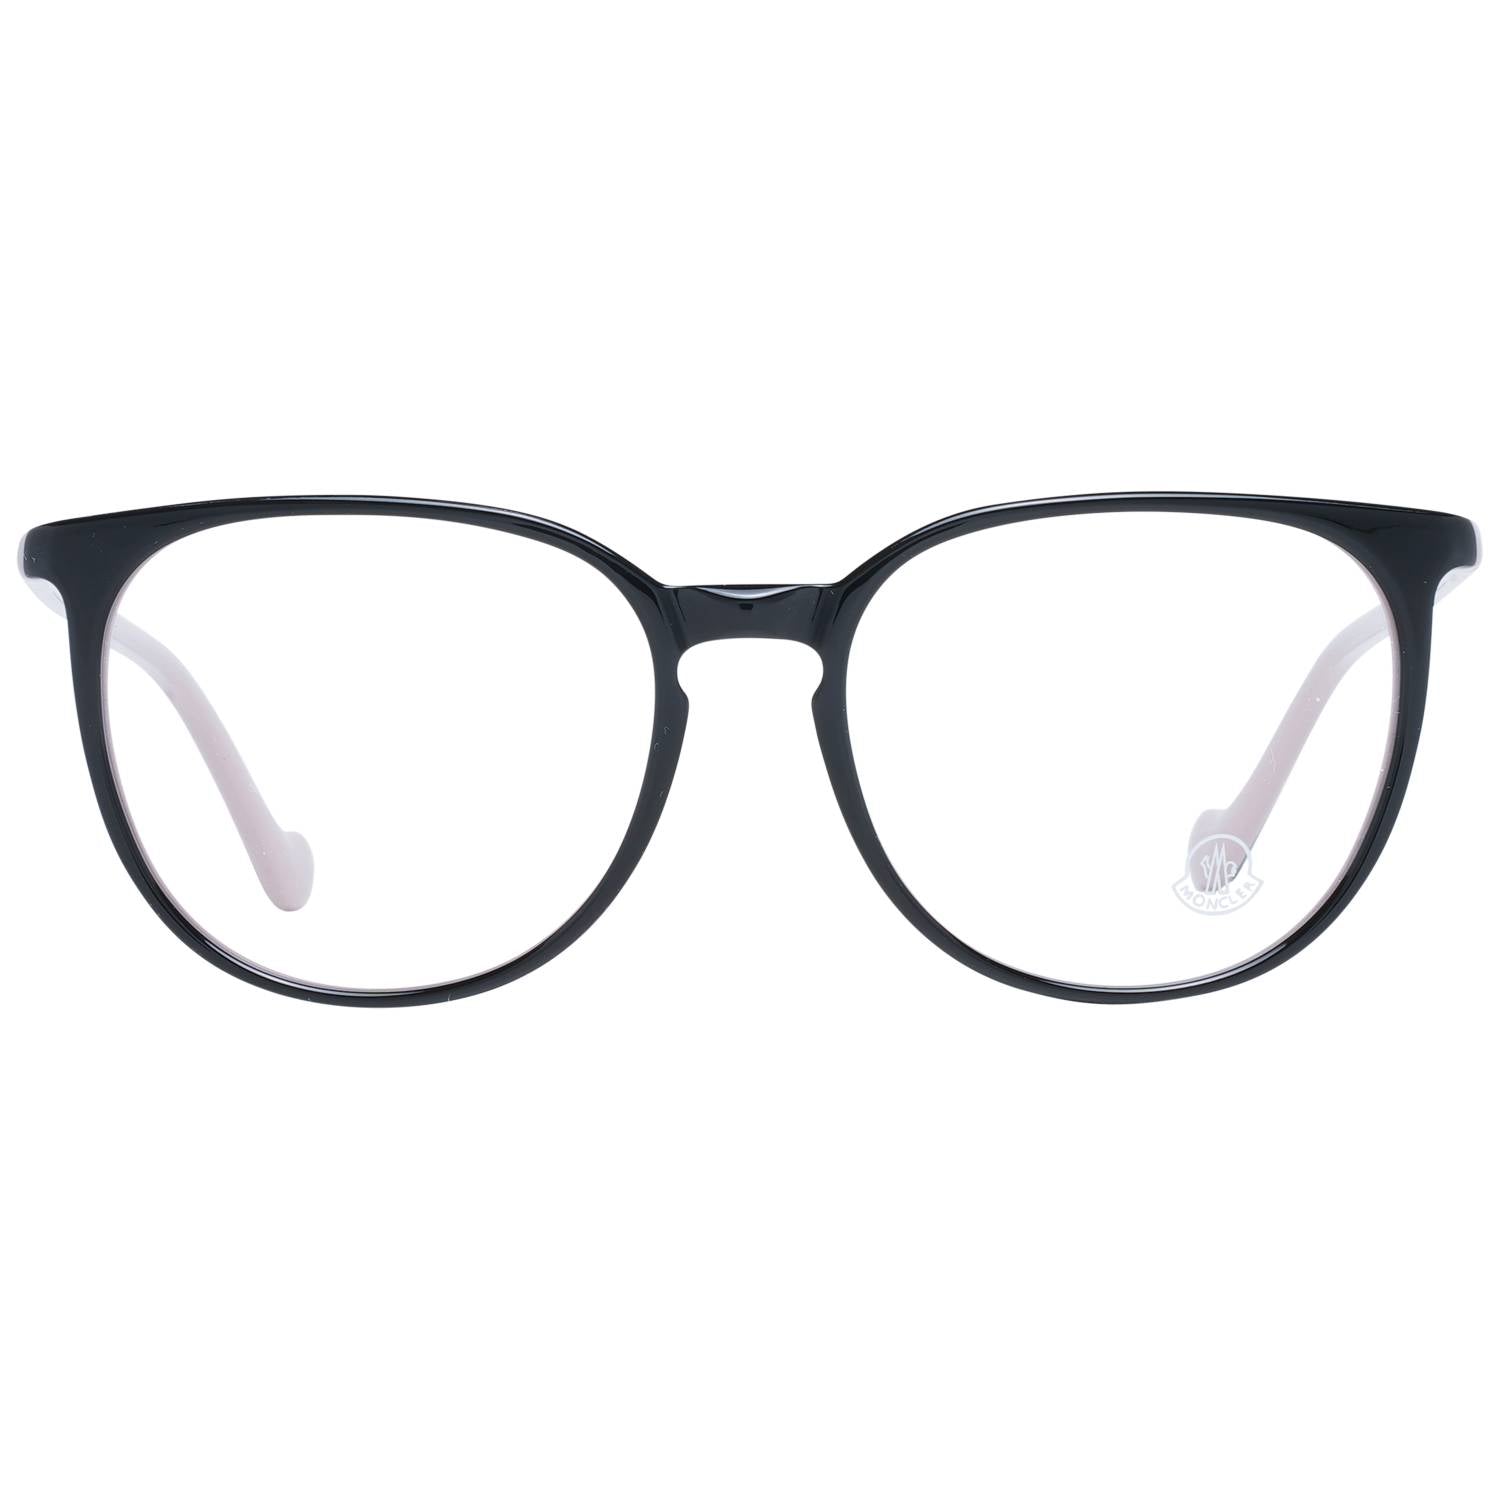 Moncler Eyeglasses Moncler Glasses Frames ML5089 005 54mm Eyeglasses Eyewear UK USA Australia 